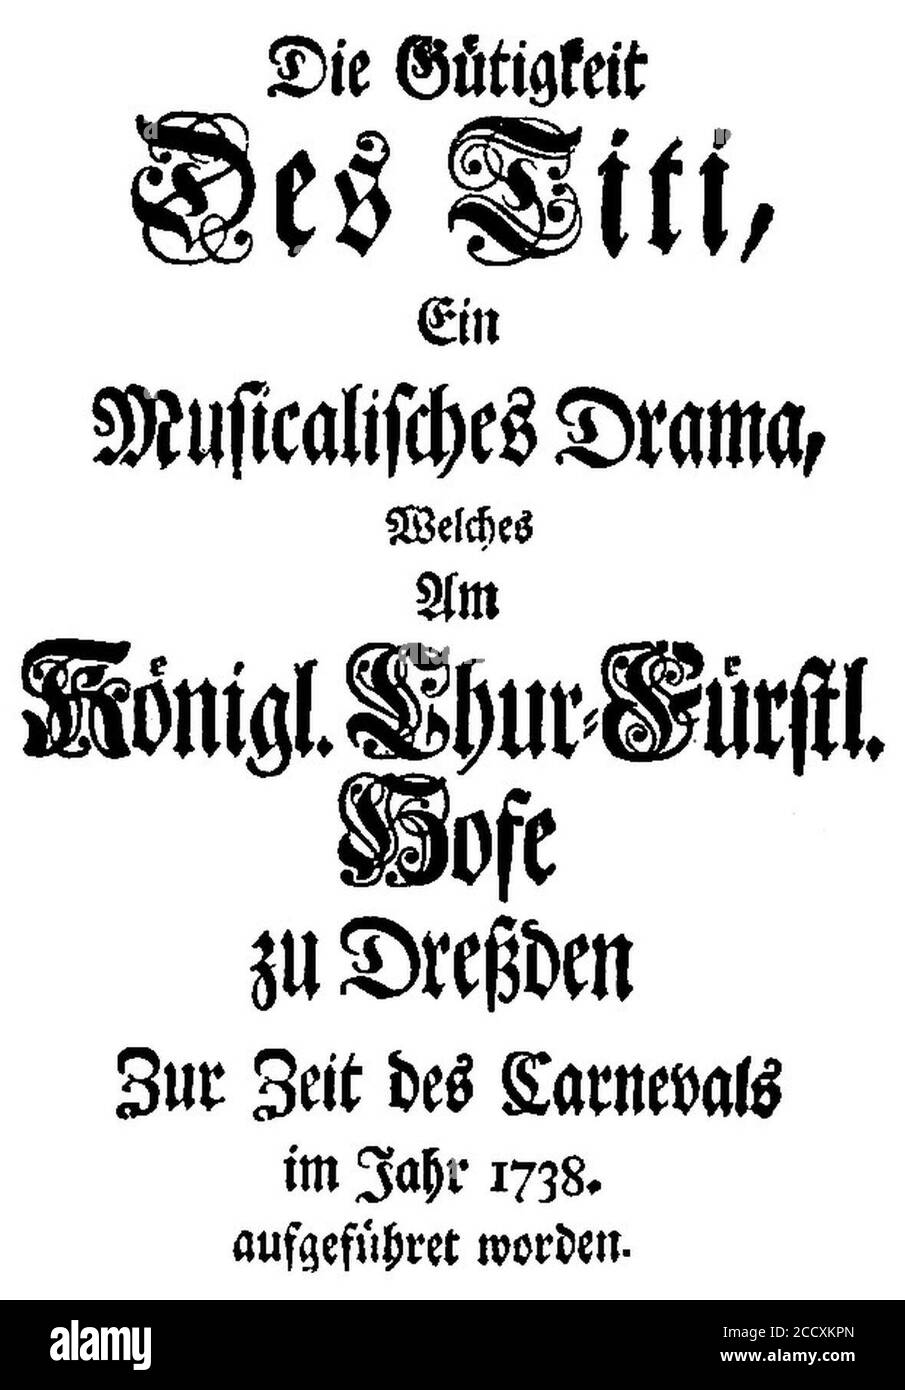 Johann Adolph Hasse - La Clemenza di Tito - german titlepage of the libretto - Dresden 1738. Stock Photo